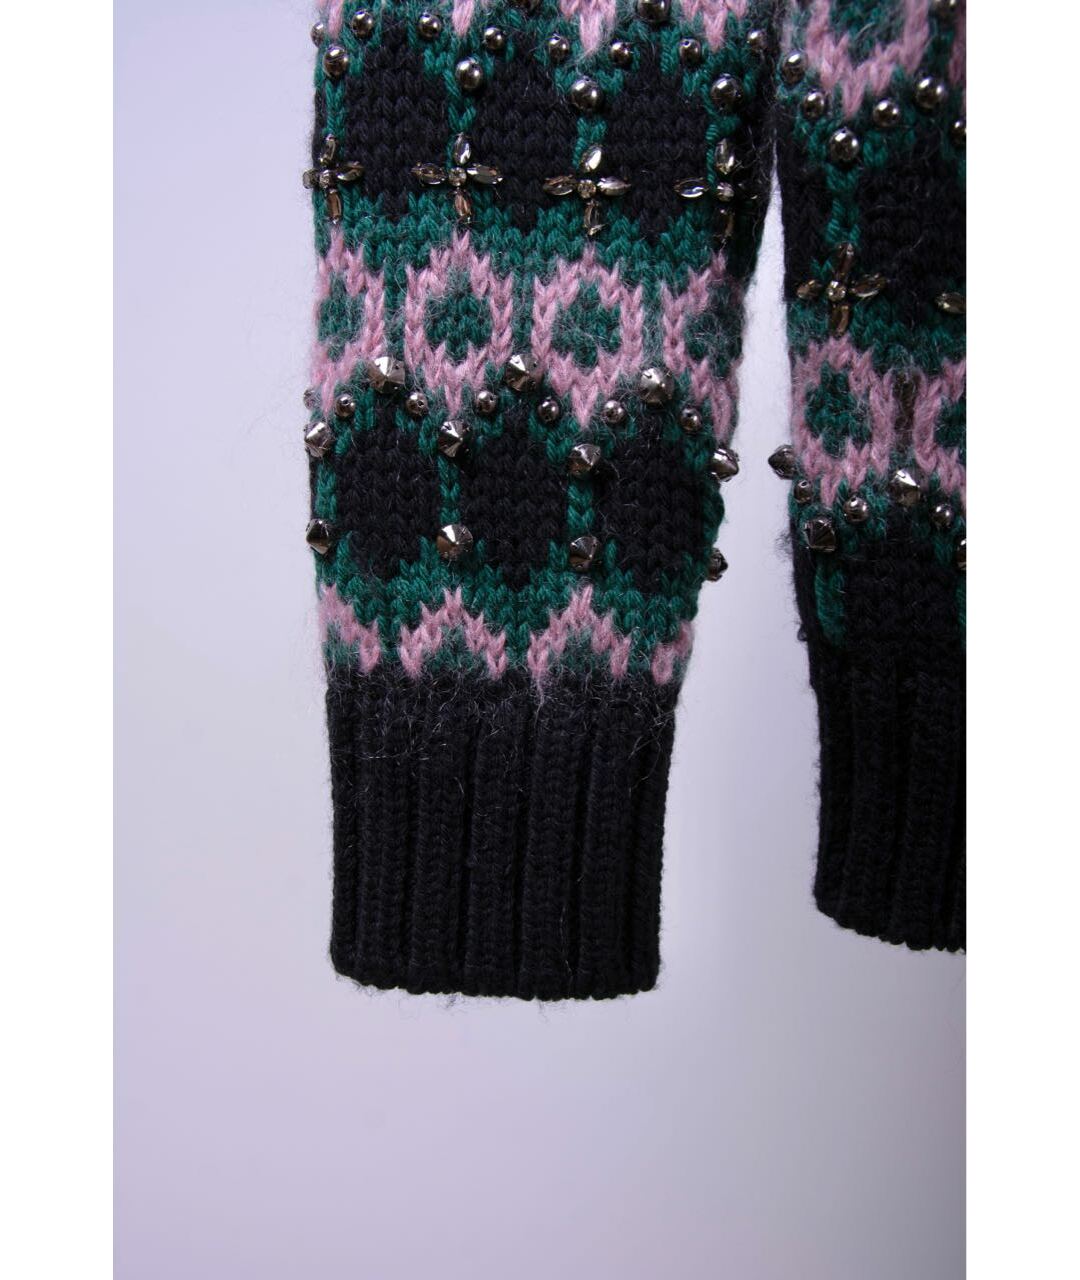 GUCCI Зеленый шерстяной джемпер / свитер, фото 5